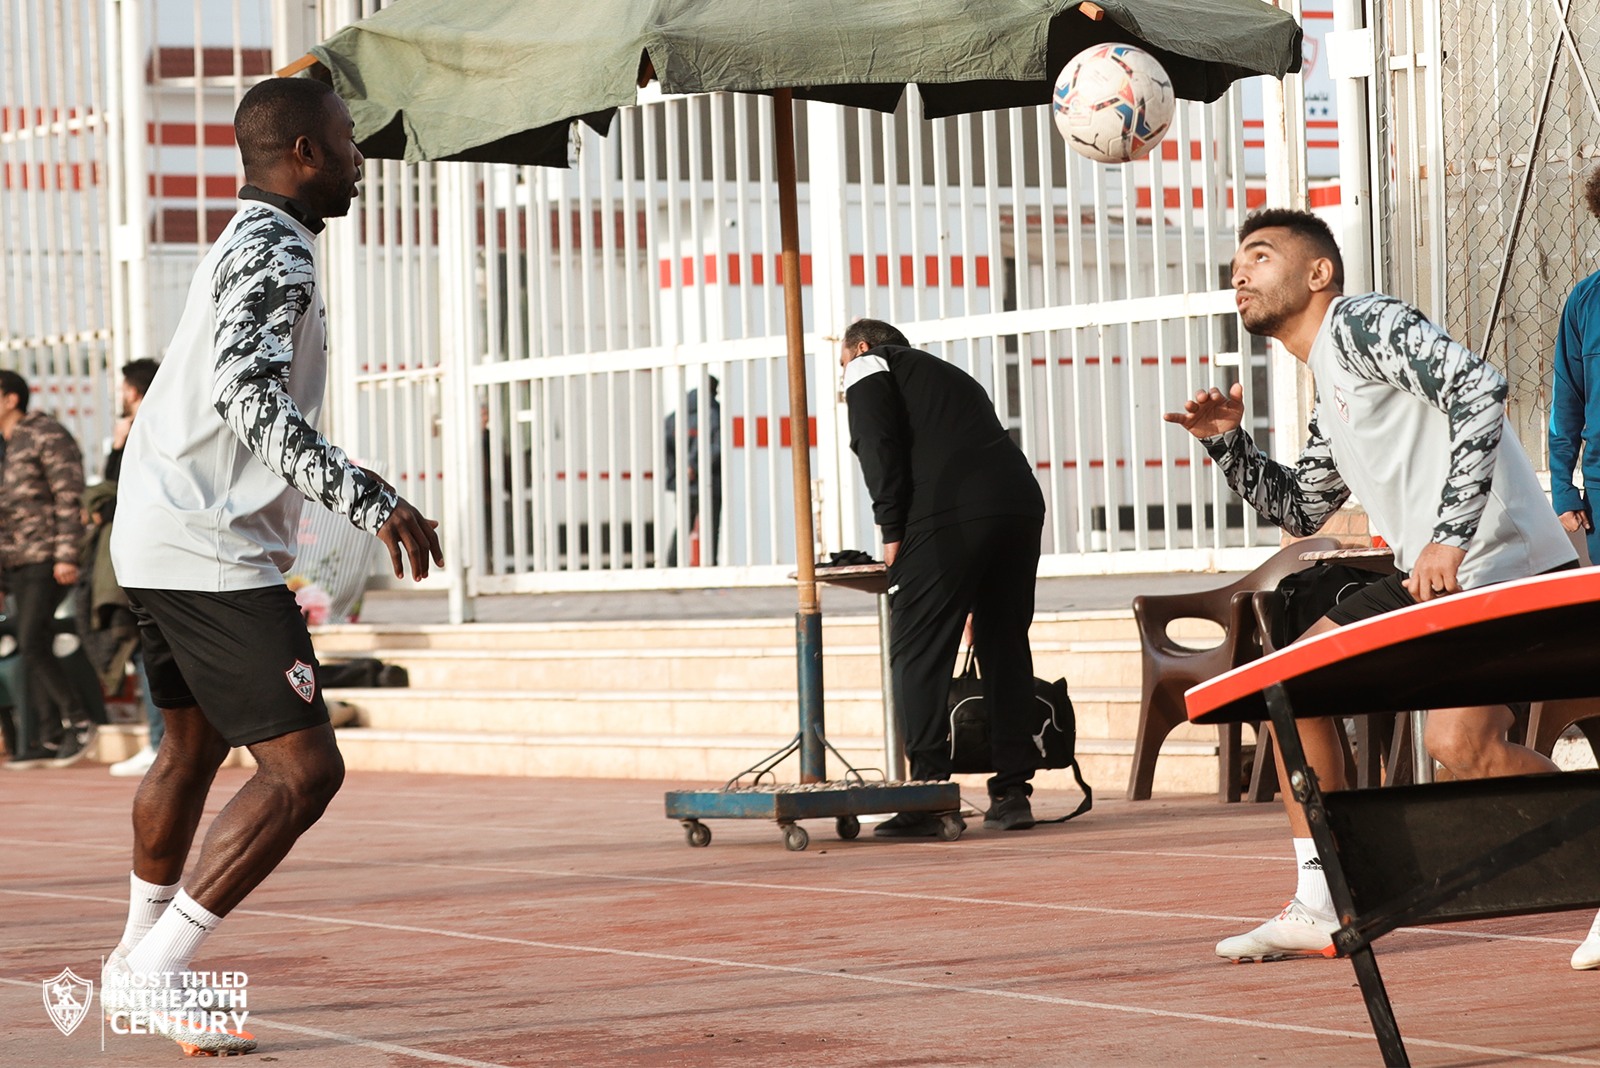 8 صور ترصد مران الزمالك اليوم استعدادًا للمباراة الأولى في كأس الرابطة